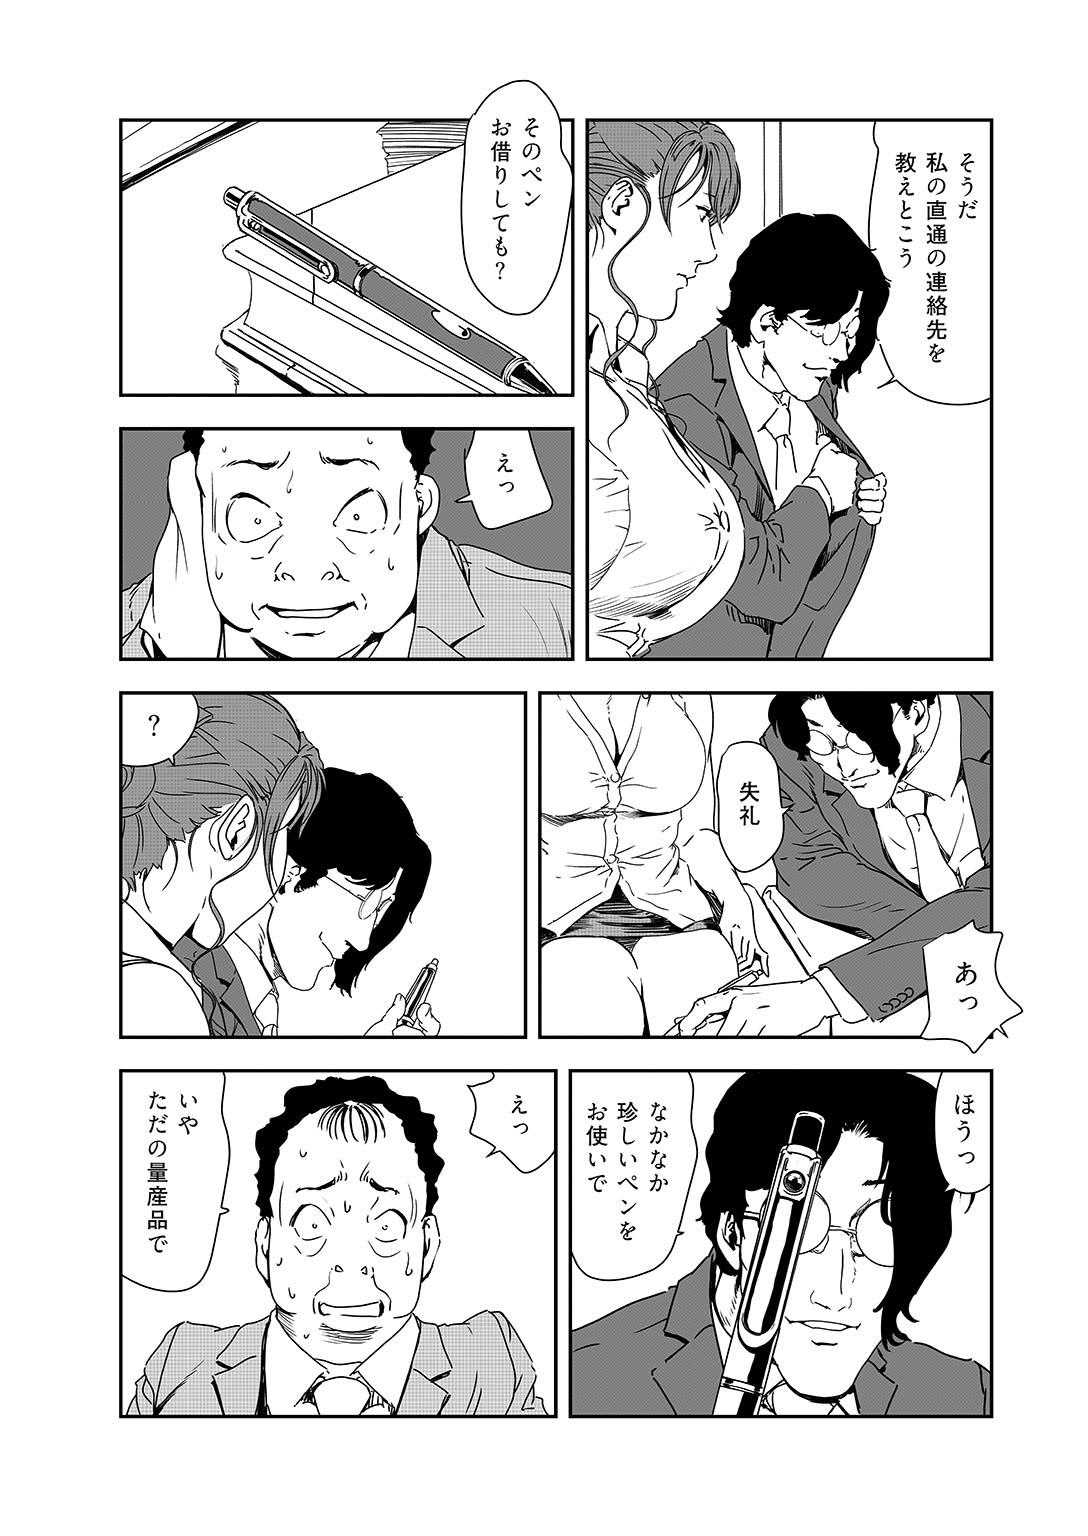 Highschool Nikuhisyo Yukiko 38 Funny - Page 4